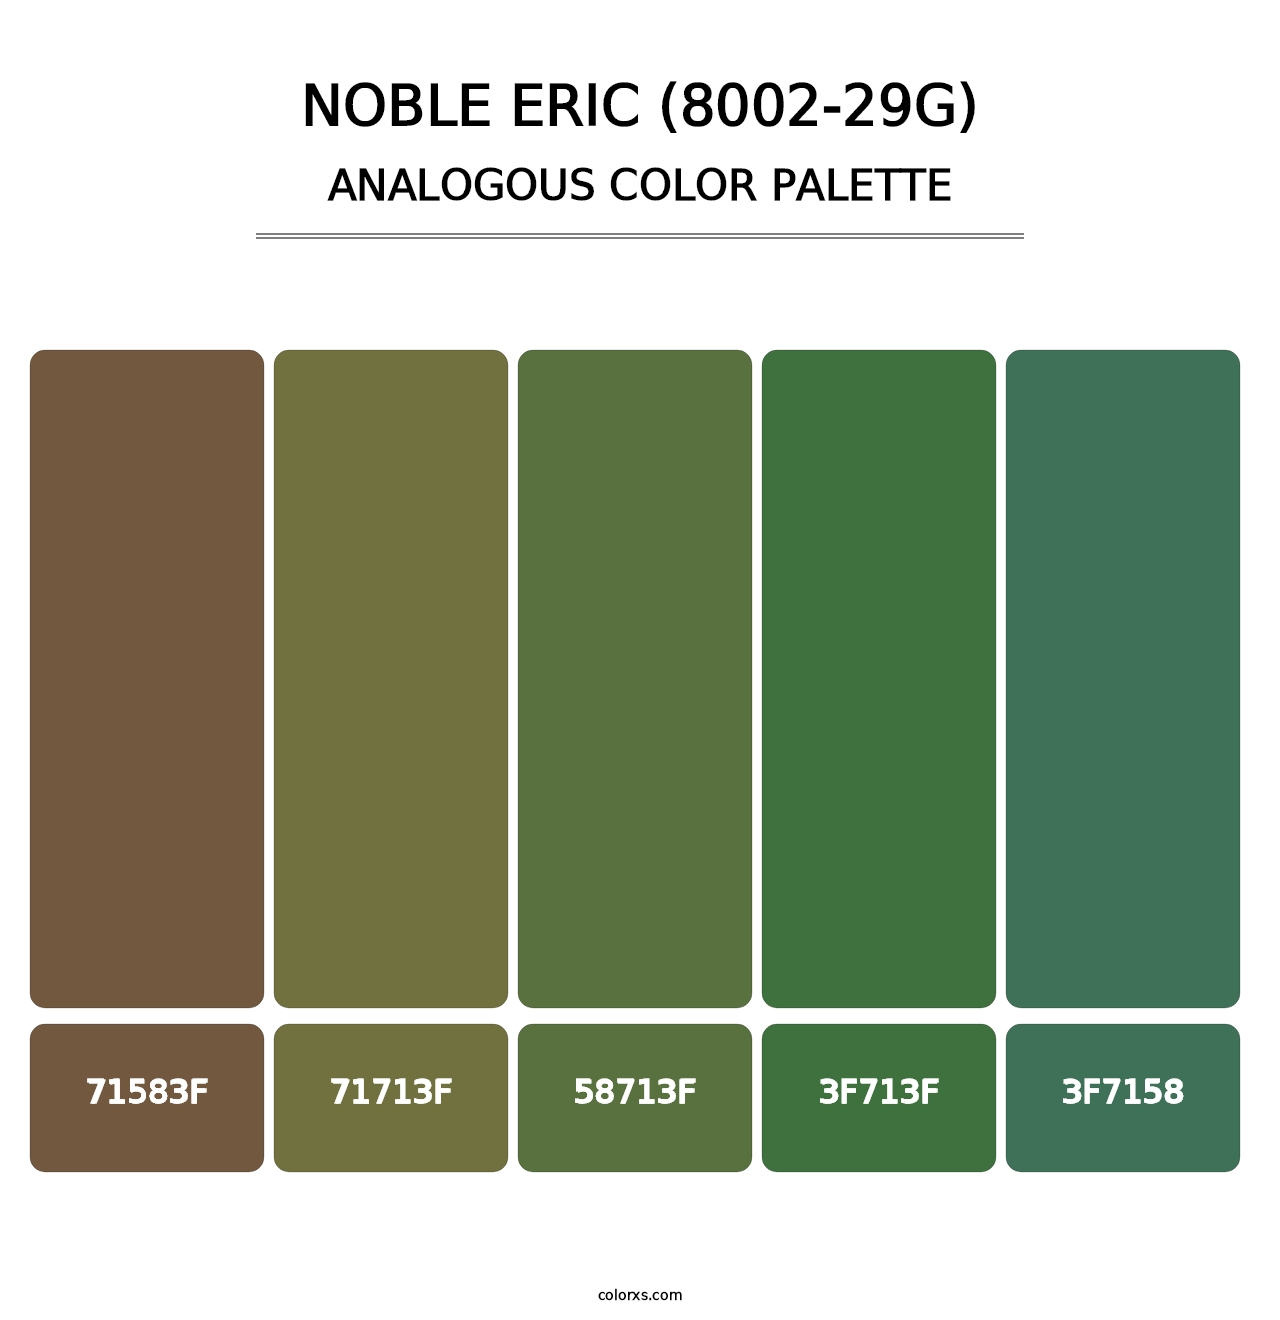 Noble Eric (8002-29G) - Analogous Color Palette